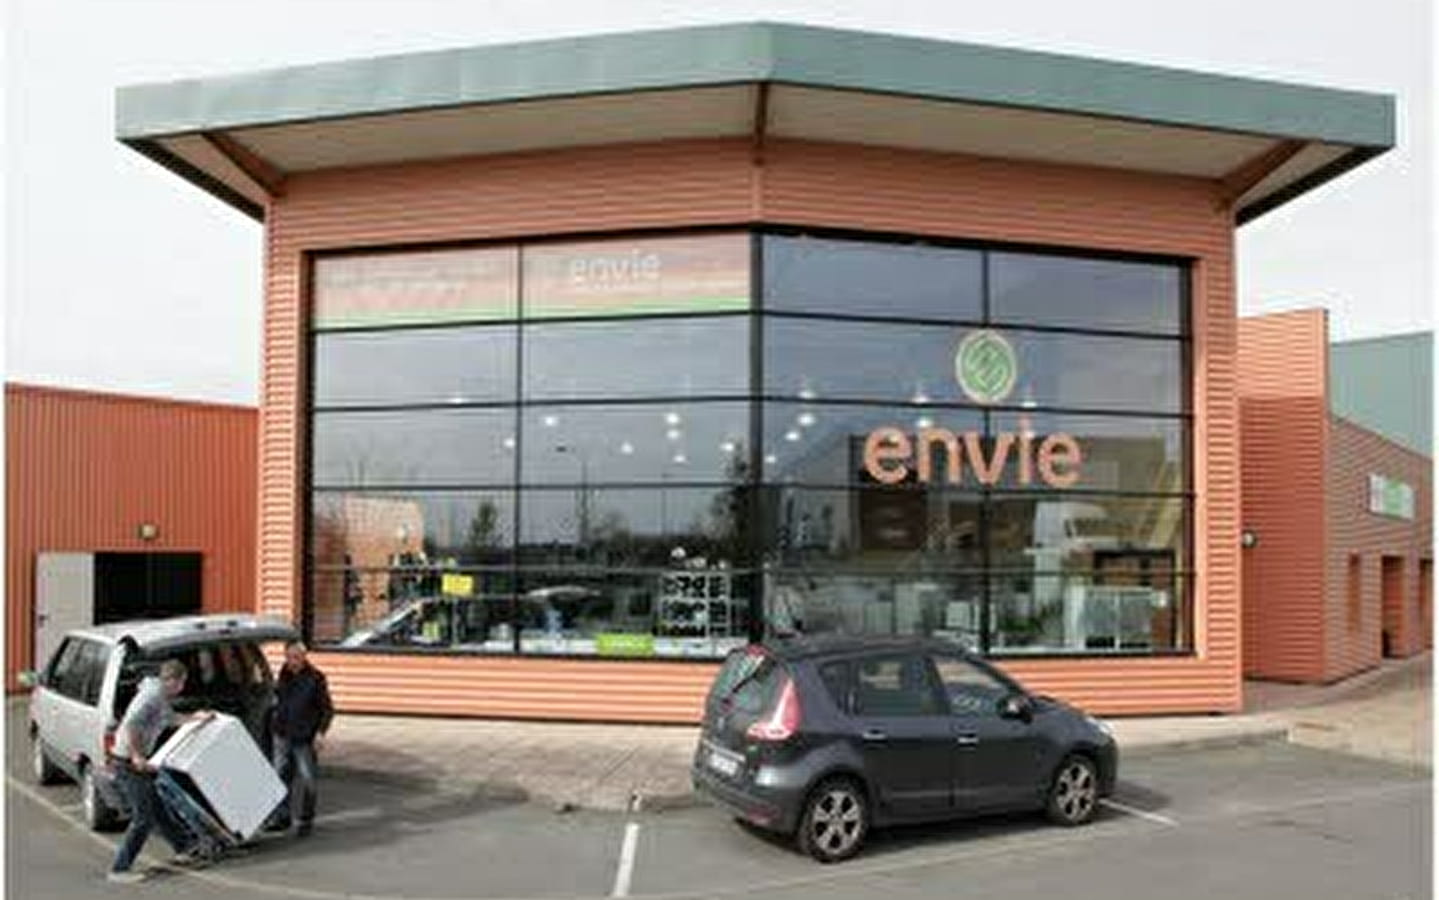 Bezoek 123 Natuur: ENVIe Franche-Comté werkplaats en winkel